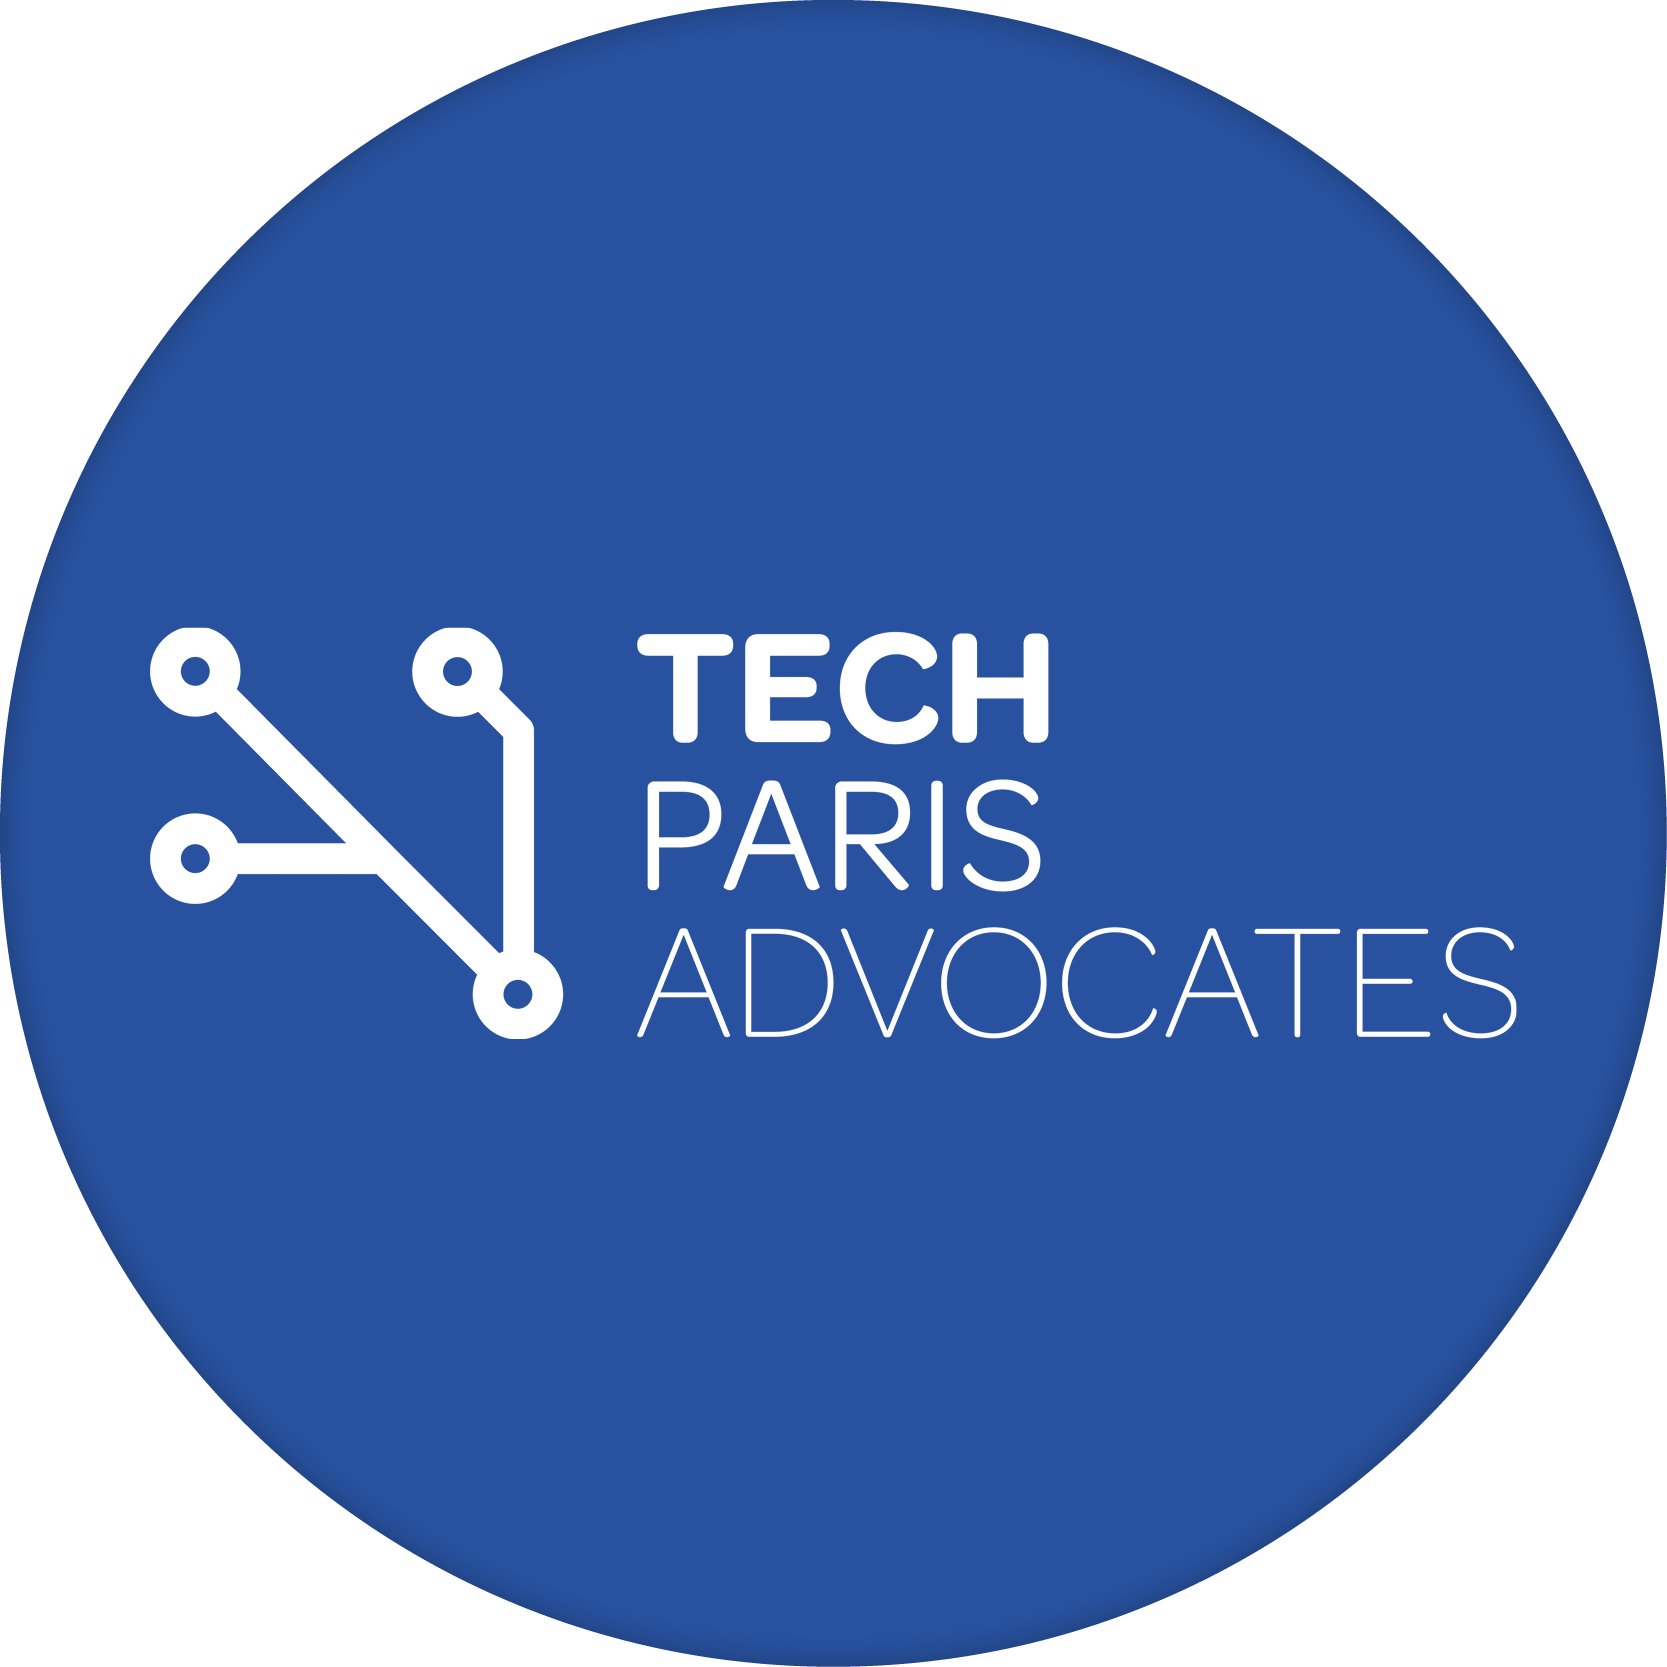 Organisation sœur de Tech London Advocates, Tech Paris Advocates est une initiative privée, par des entrepreneurs et pour des entrepreneurs.